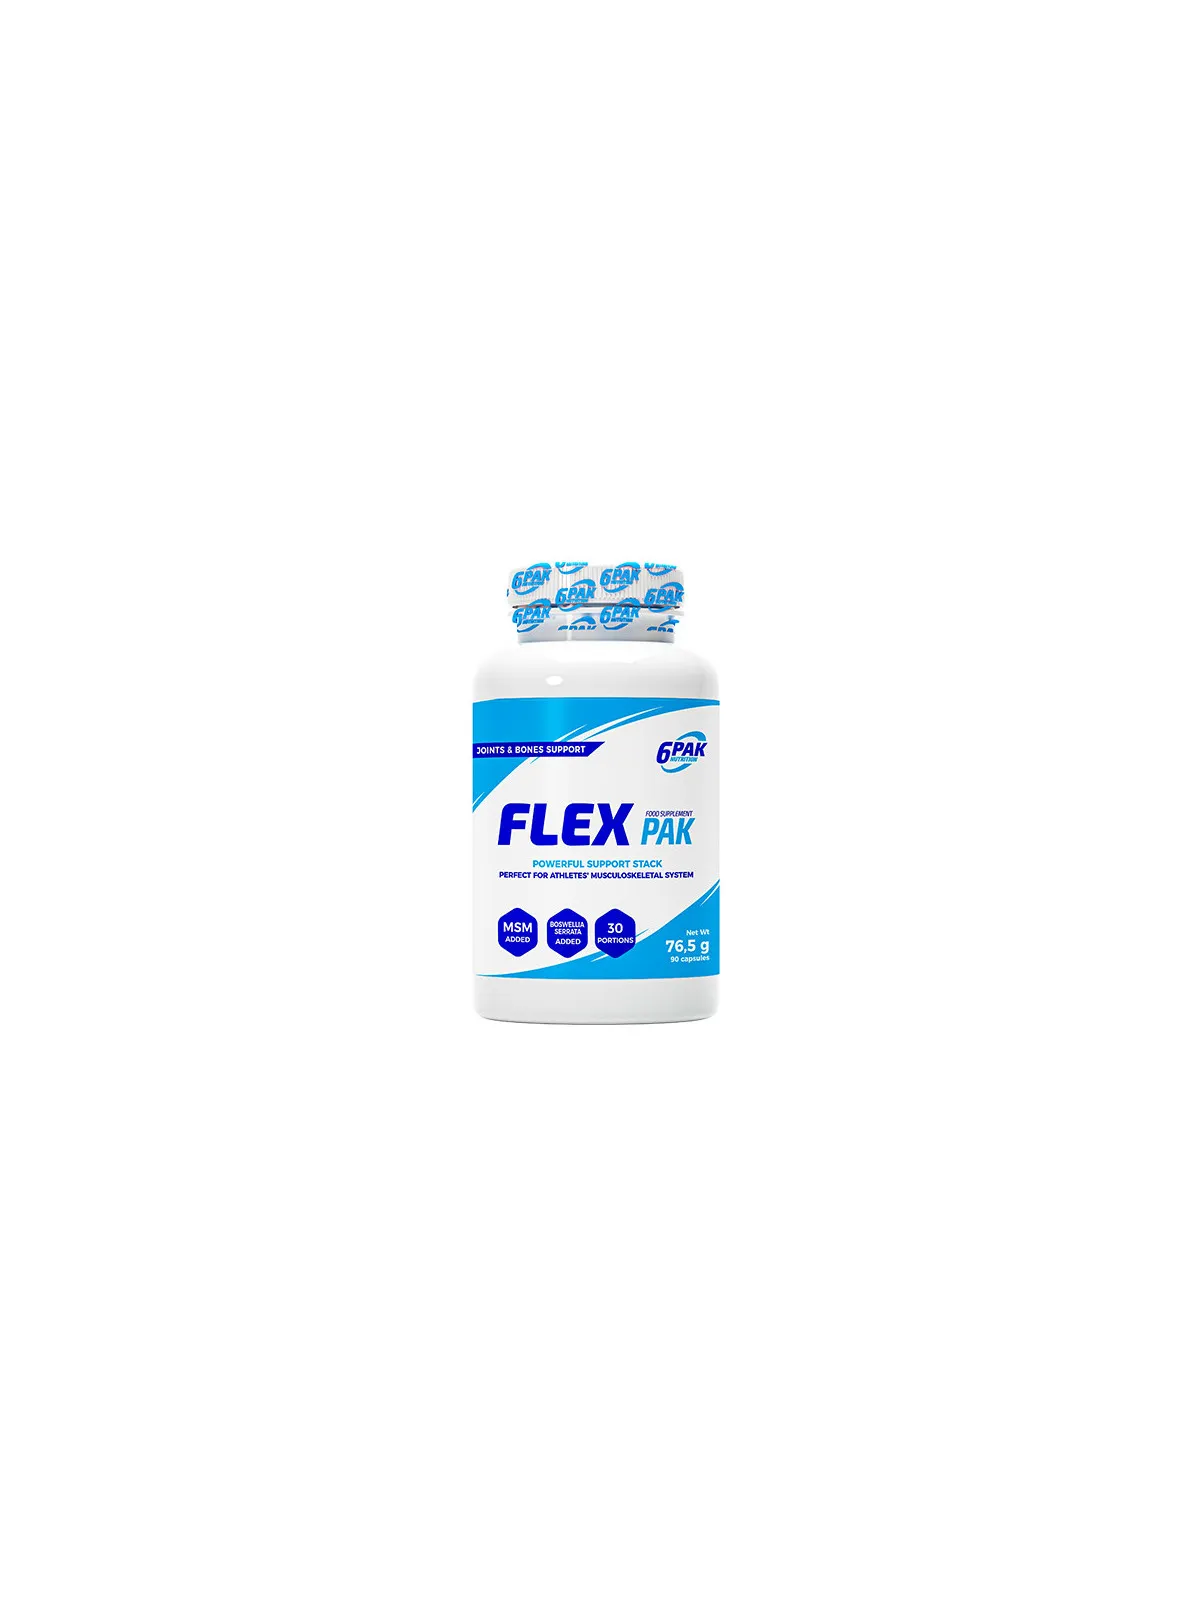 FLEX PAK - 90 kaps. | Collagen